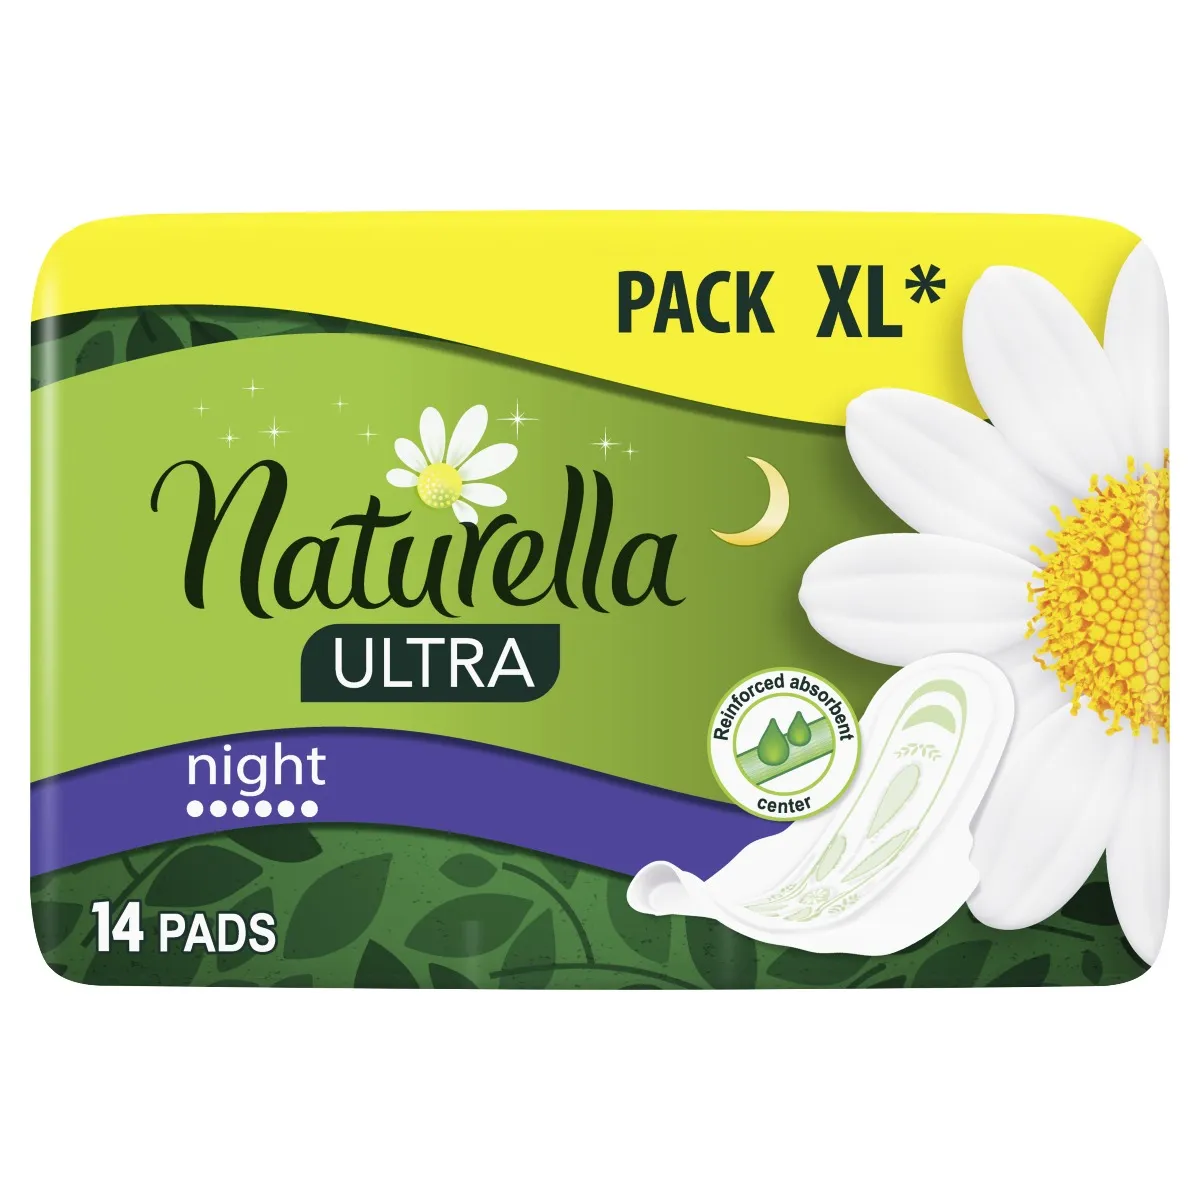 Naturella Ultra Night vložky 14 ks